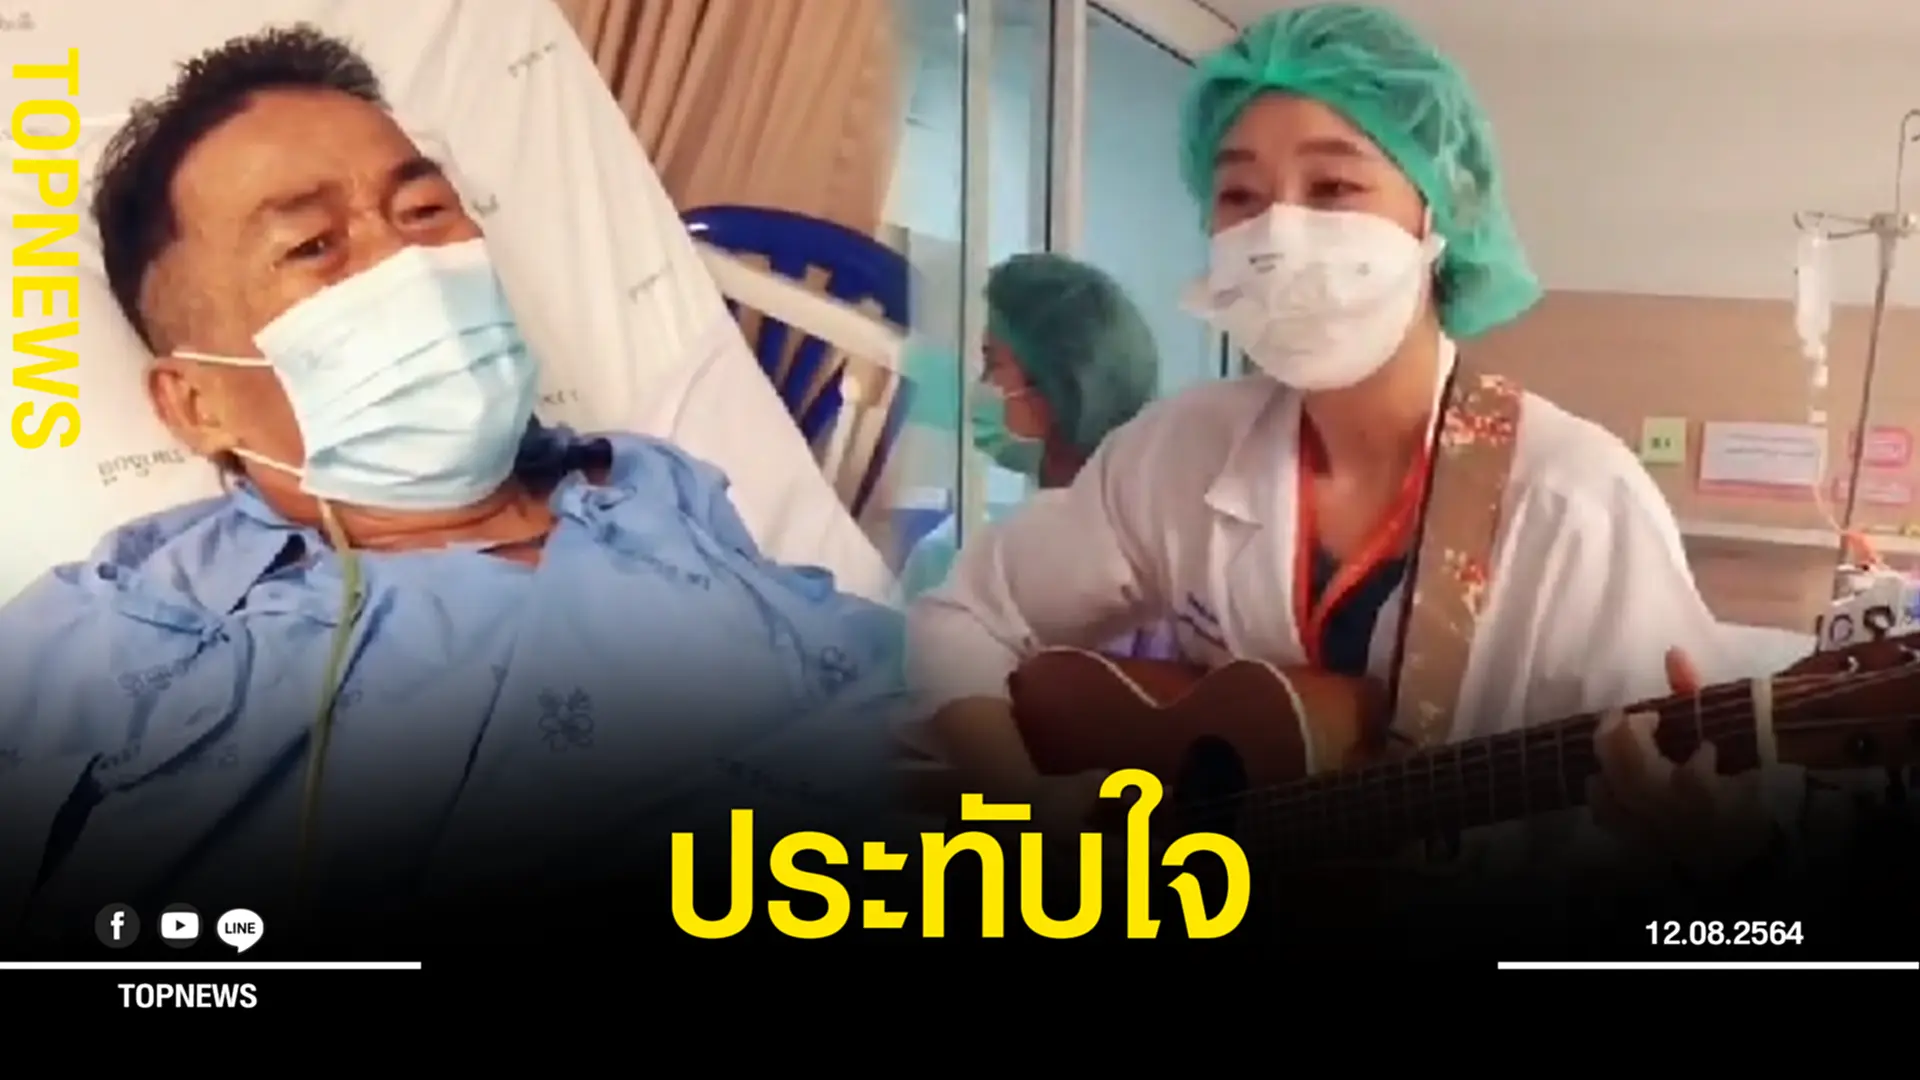 ประทับใจ หมอรพ.รามาฯ เล่นกีตาร์ร้องเพลง ให้ผู้ป่วยฟังระหว่างพักรักษาตัว